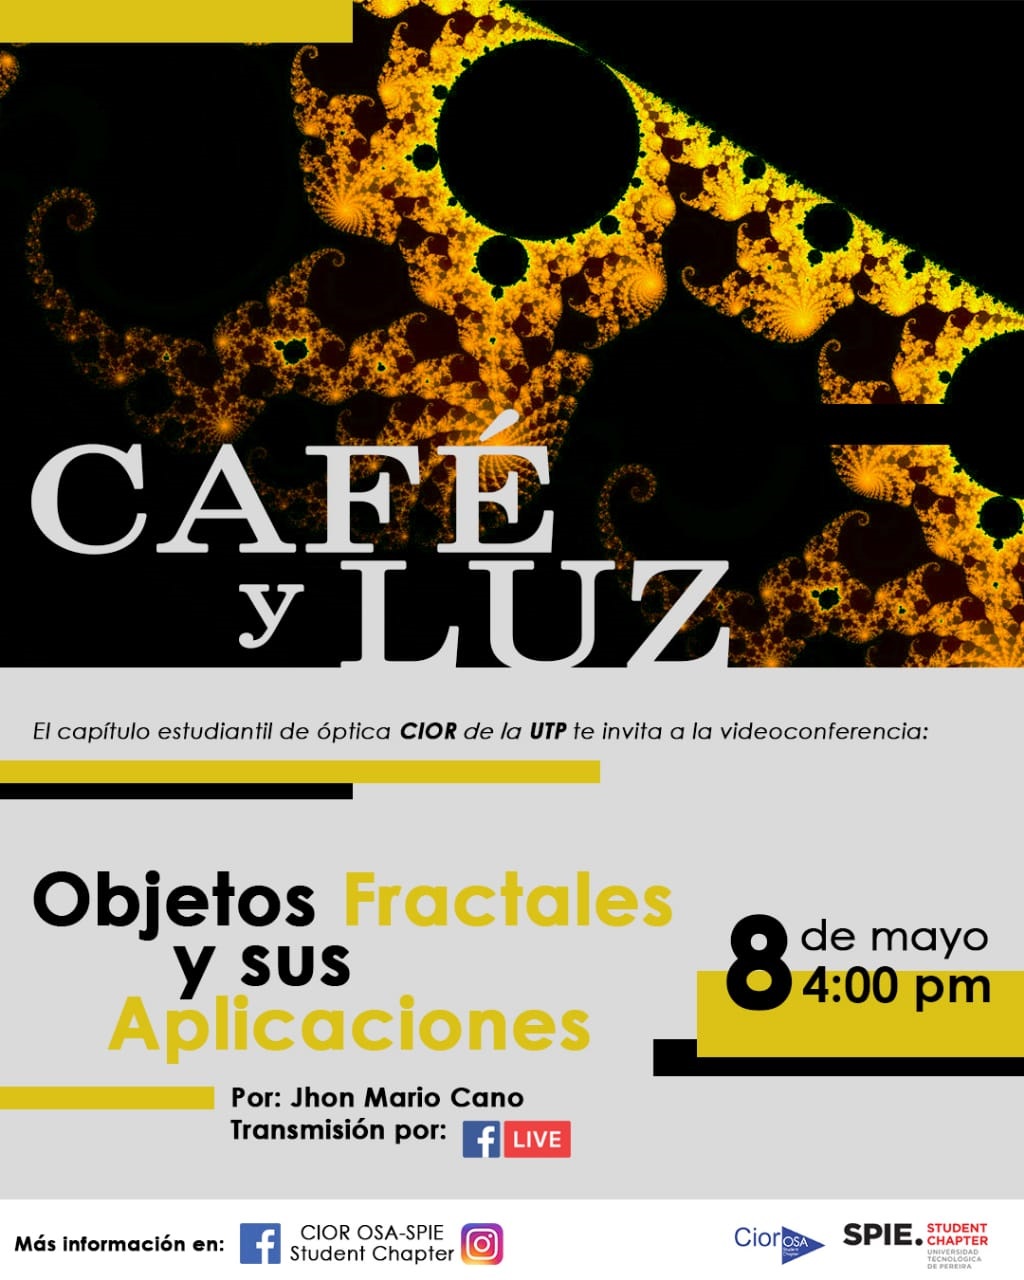 Invitación del Capítulo de óptica CIOR a Café y Luz: Objetos Fractales y sus Aplicaciones